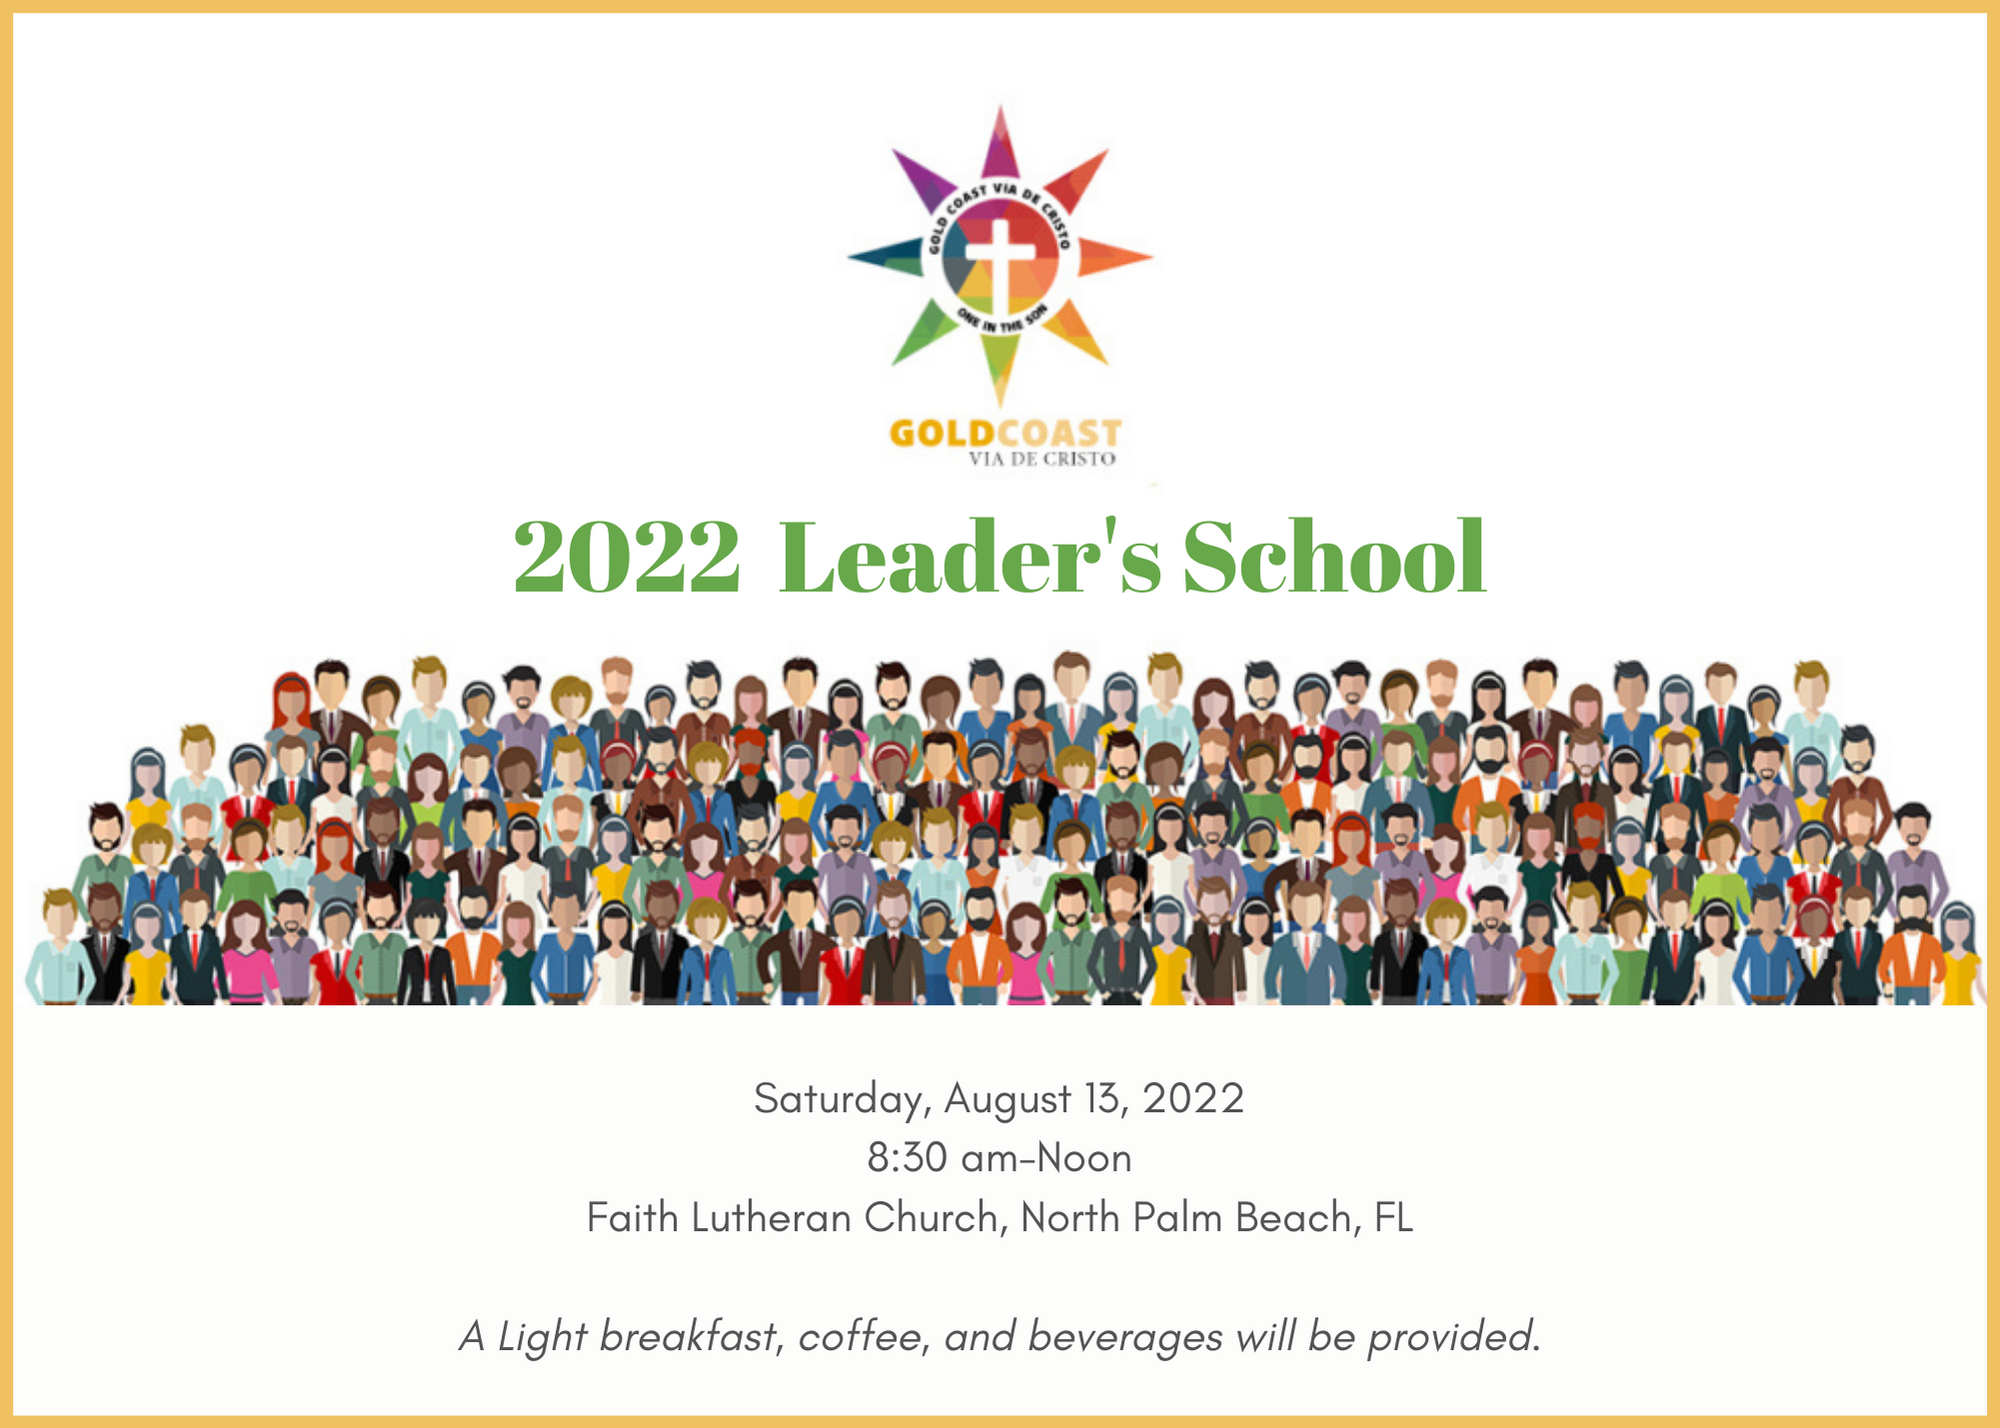 Leaders School 2022